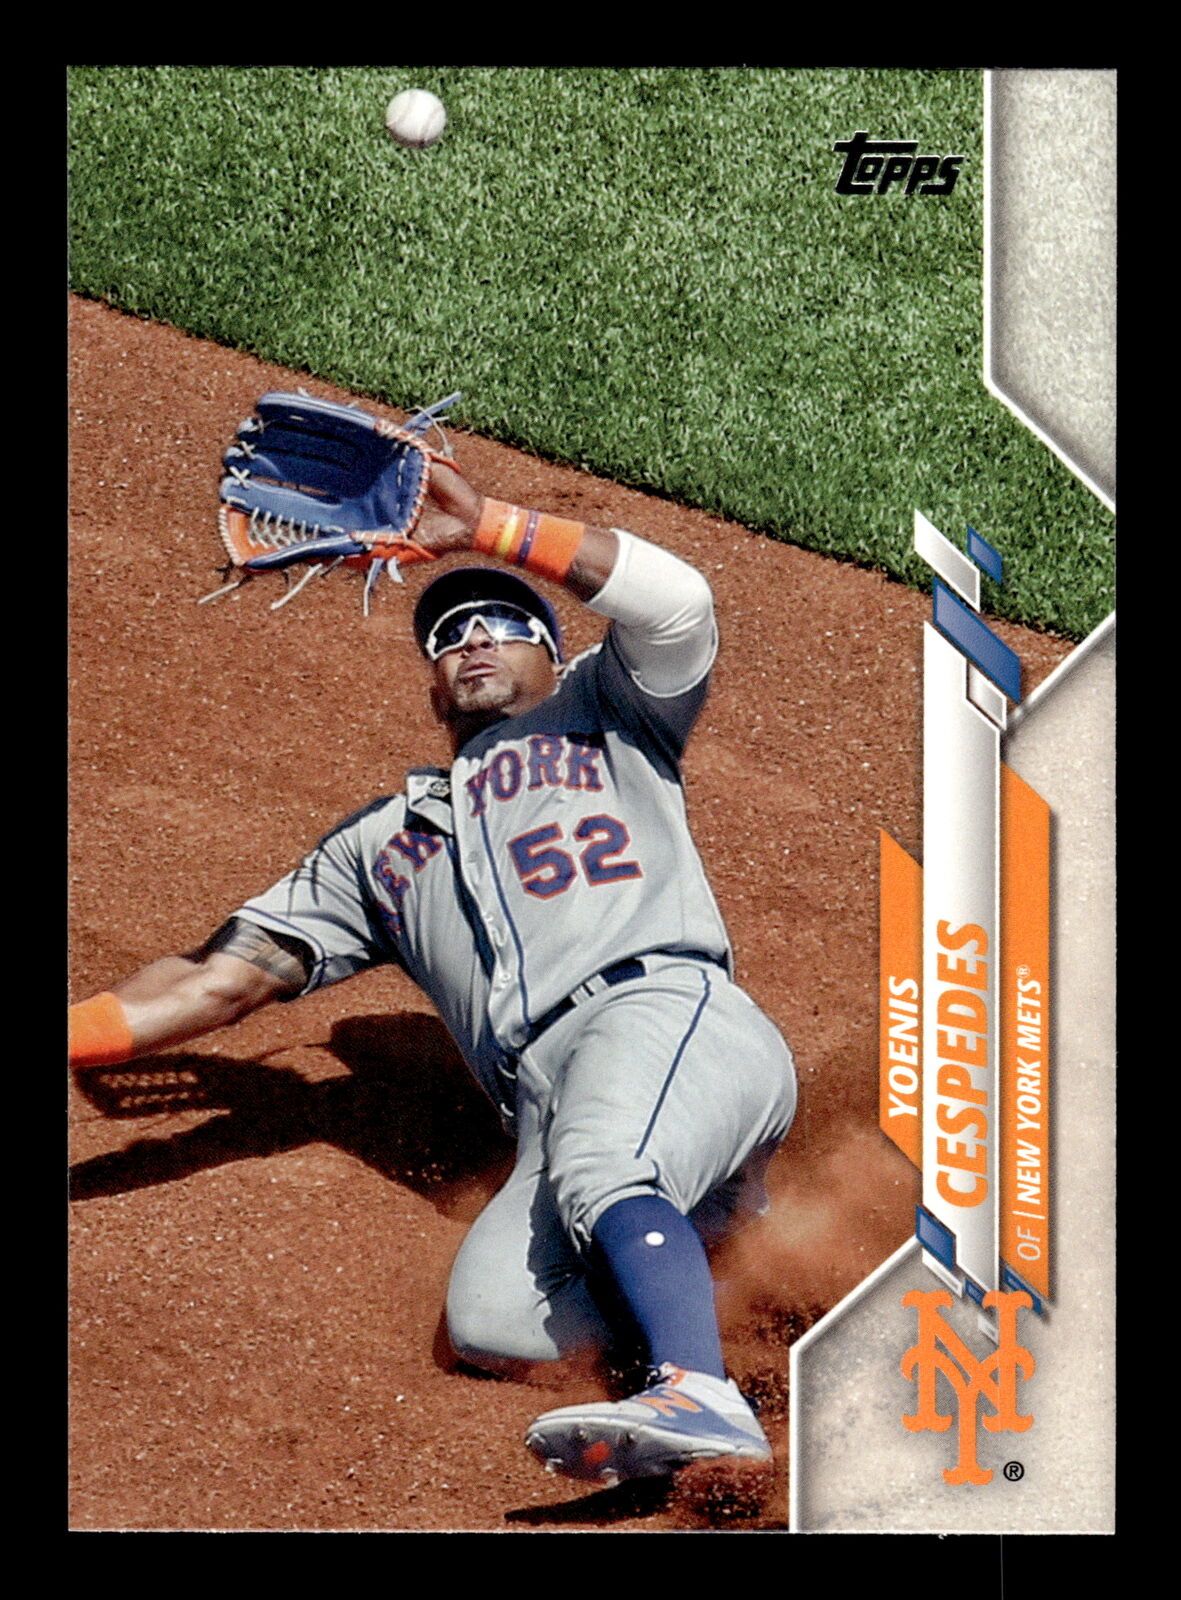 2020 Topps Series 2  #426 Yoenis Cespedes  New York Mets  Baseball Card